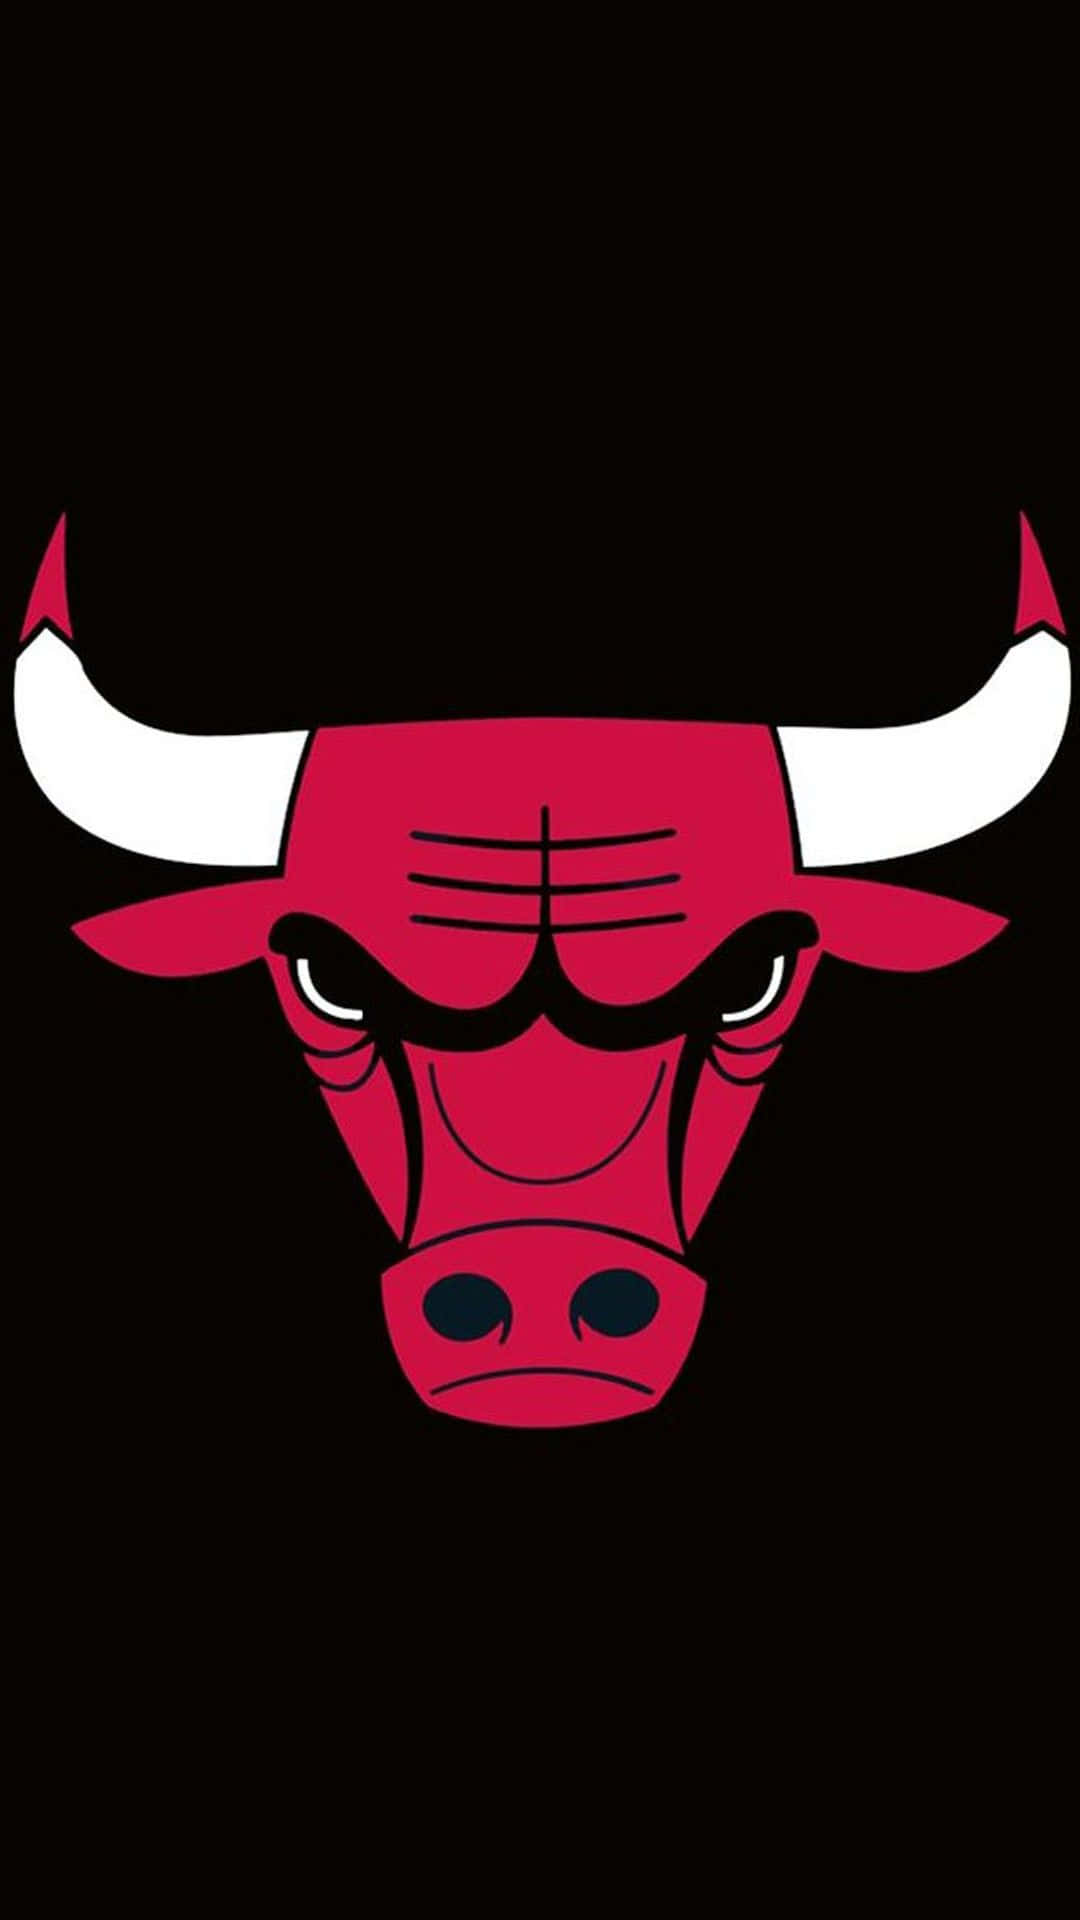 Daschicago Bulls Logo Auf Schwarzem Hintergrund. Wallpaper